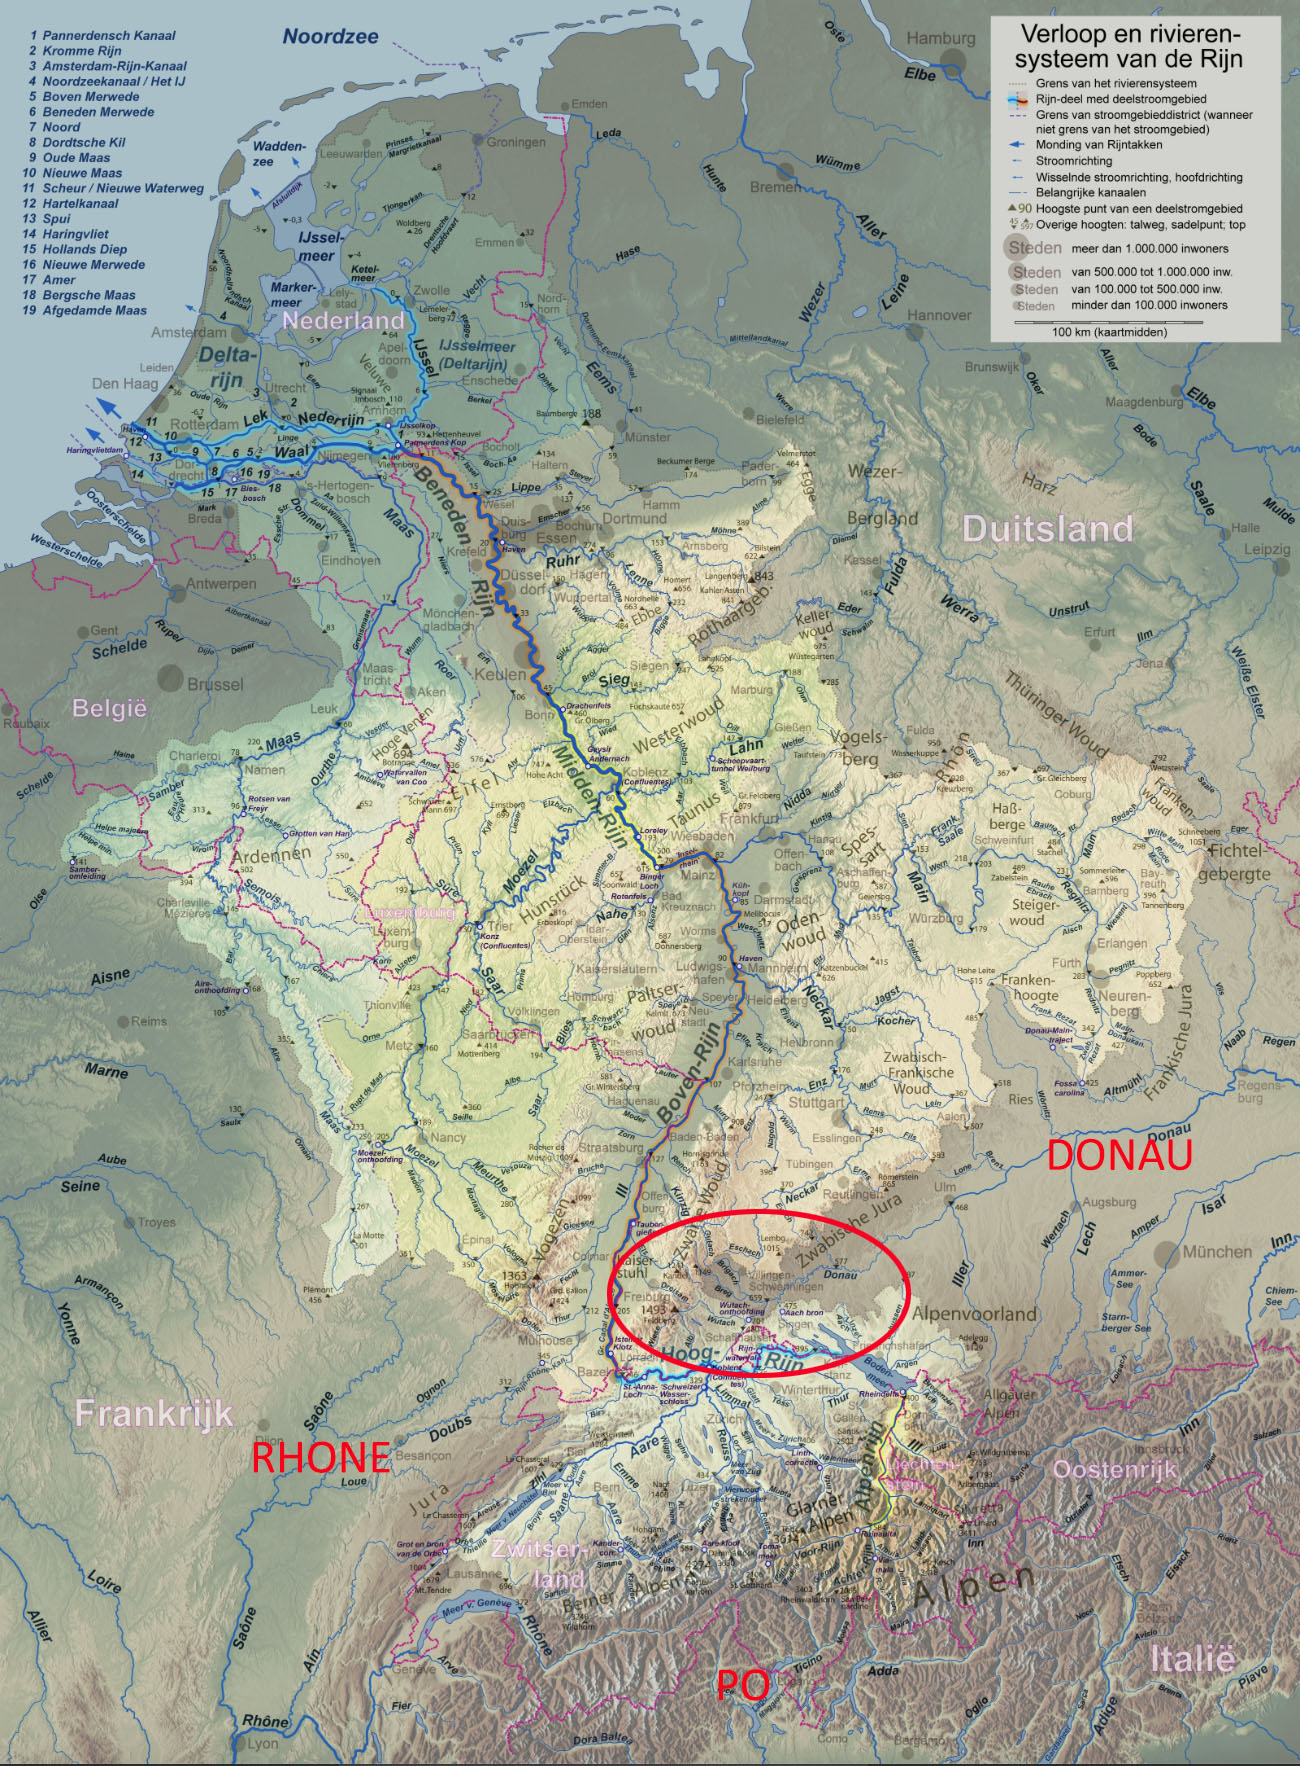 Het stroomgebied van de Rijn, met in de rode cirkel het gebied waar ik in het bericht op in ga.